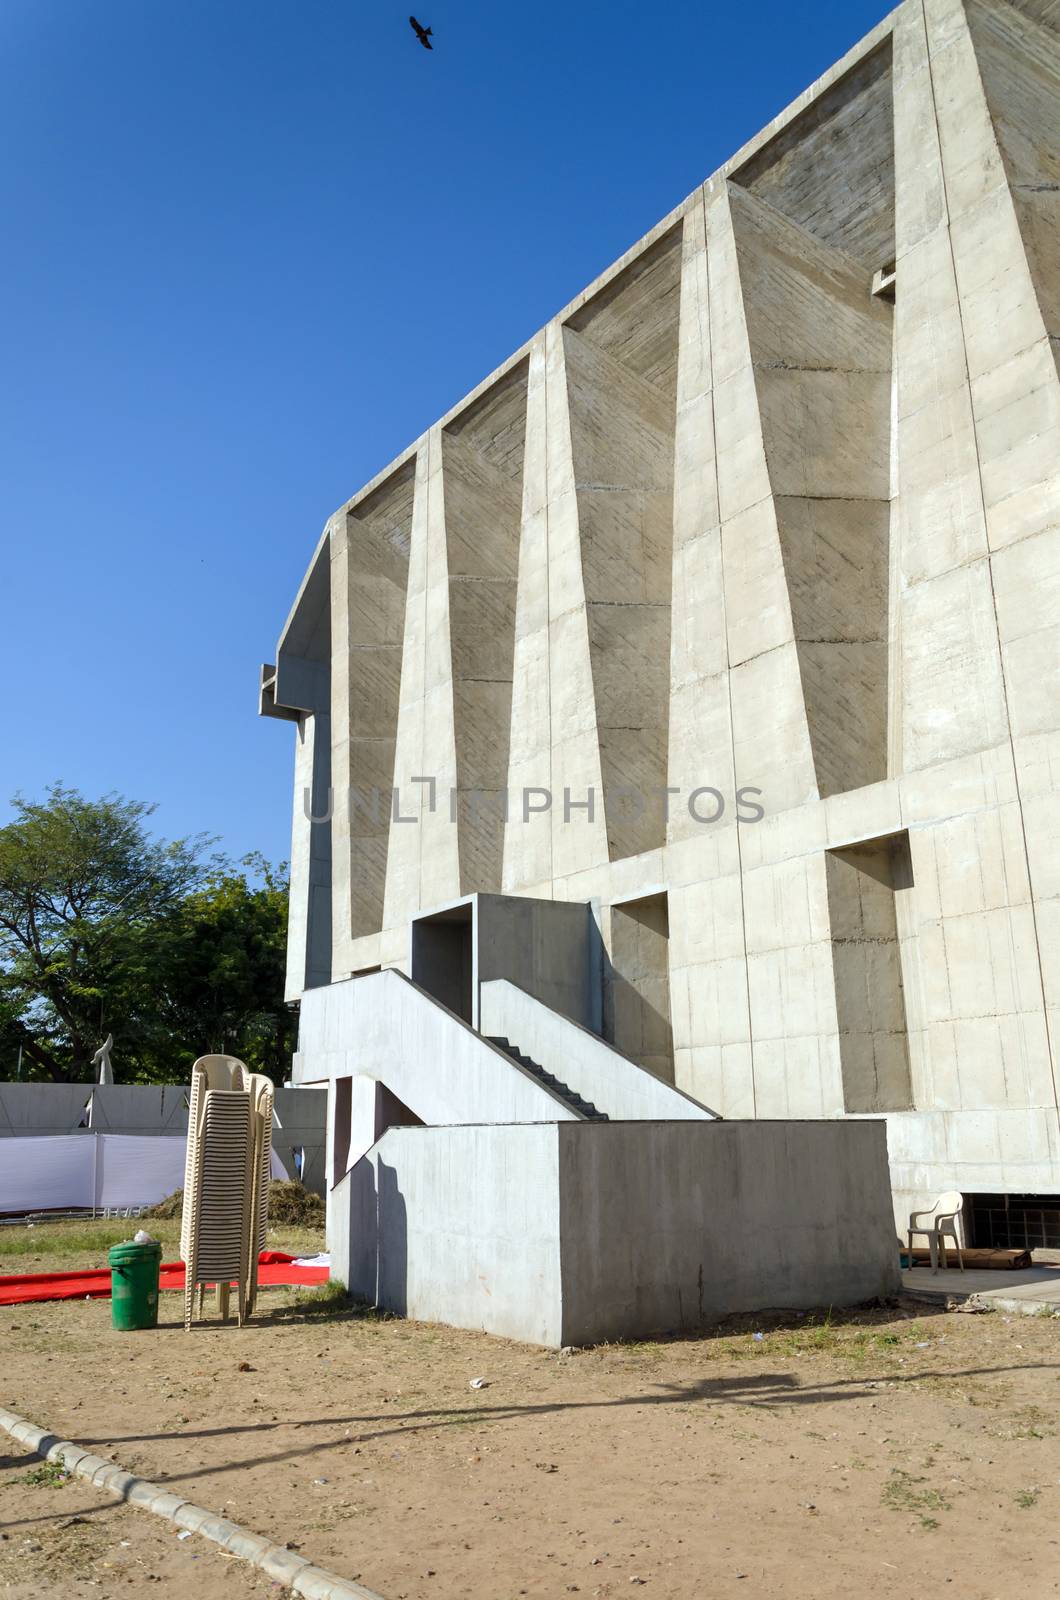 Tagore Memorial Hall in Ahmedabad, India by siraanamwong